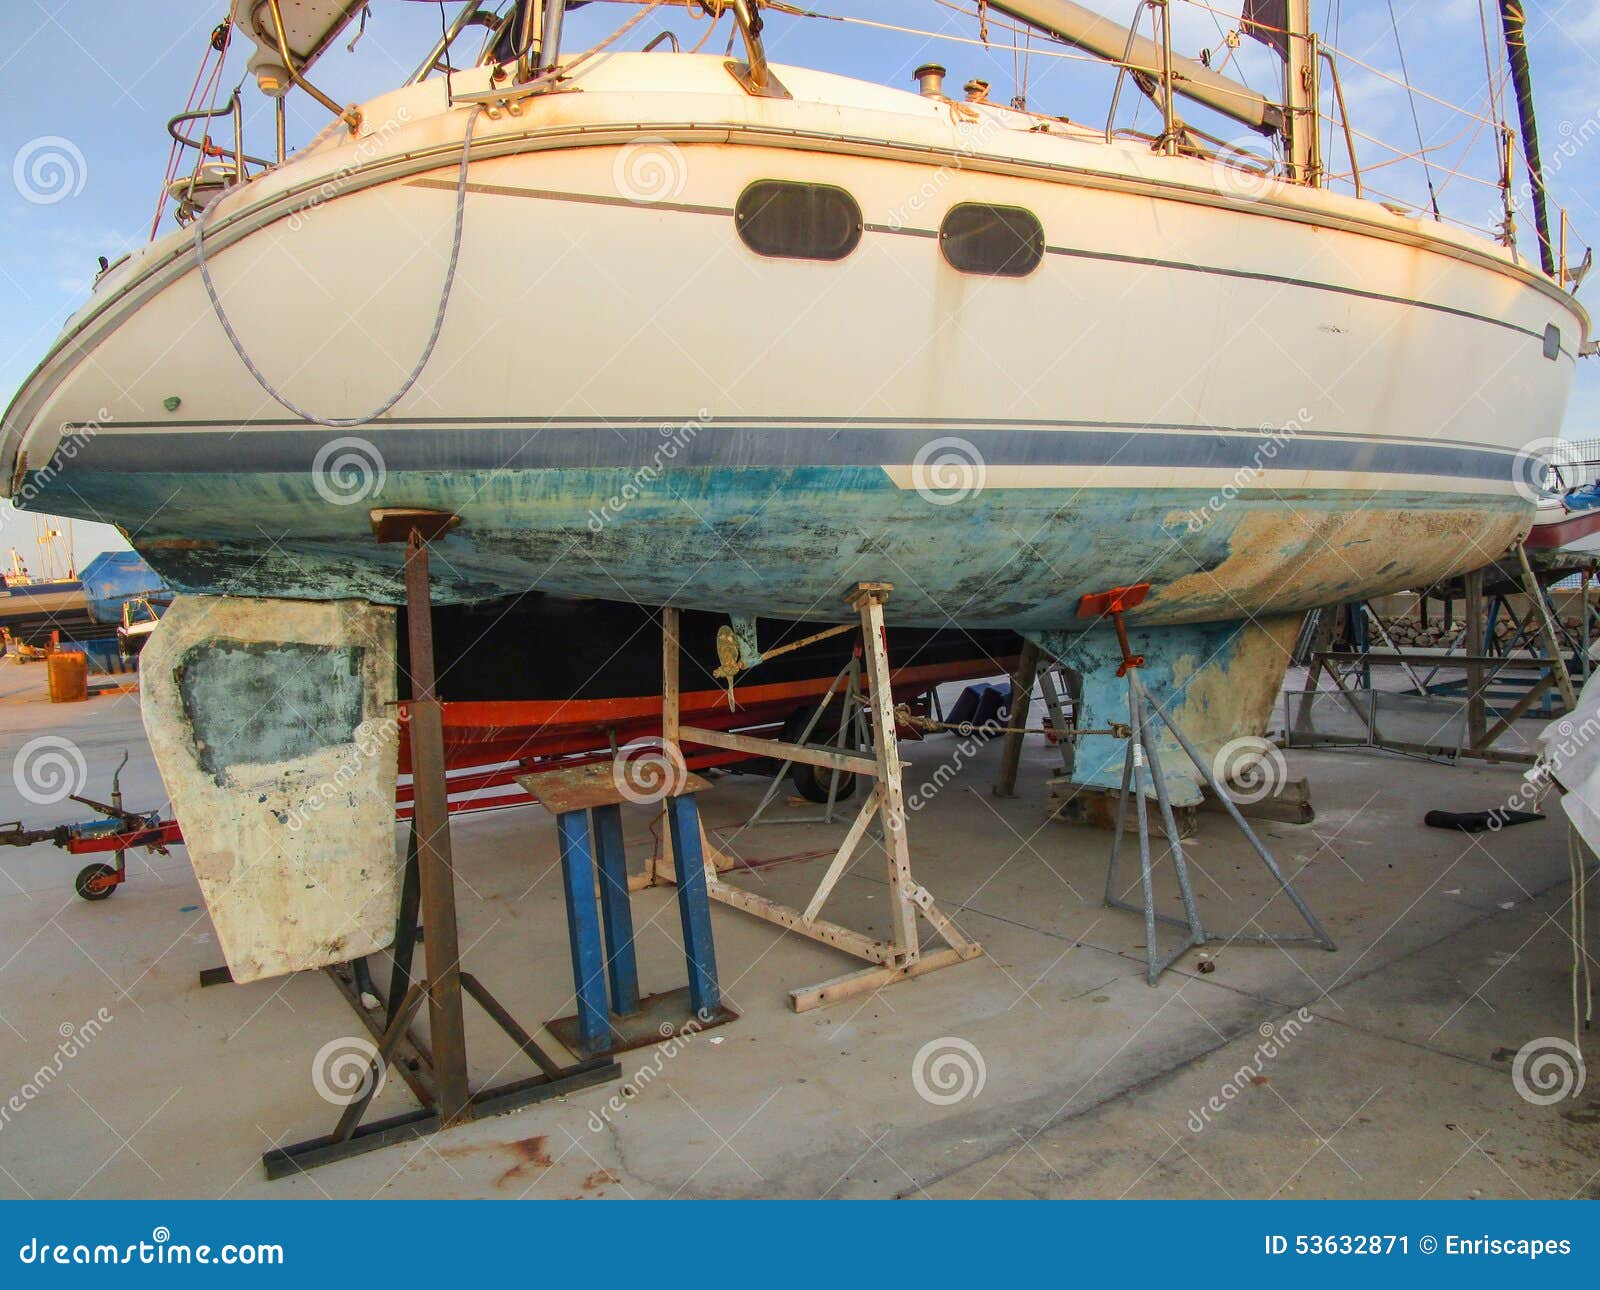 sailboat repair